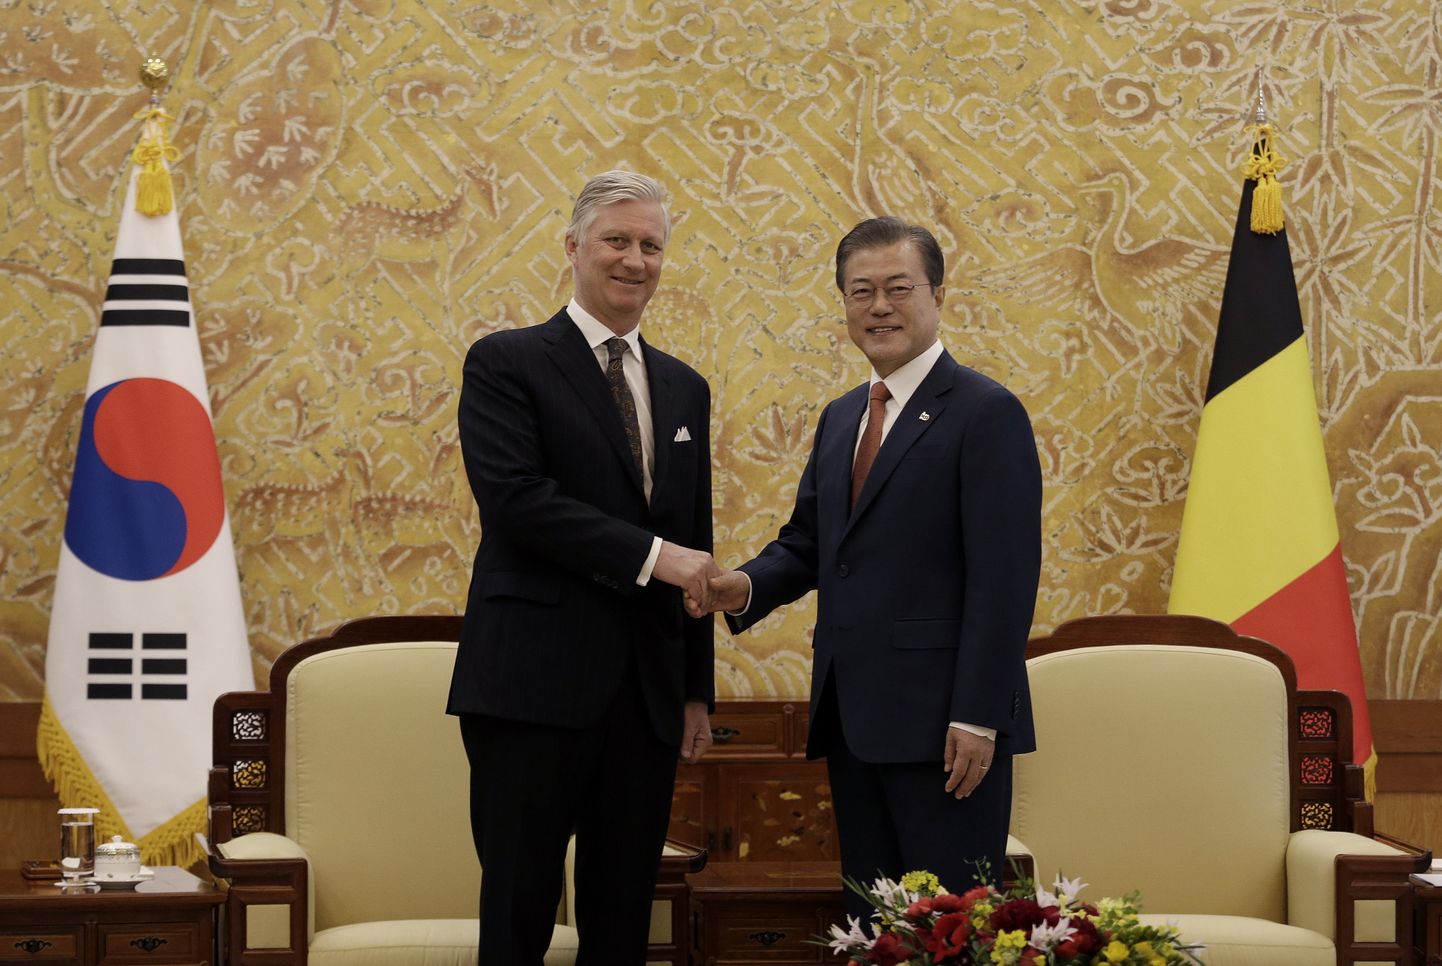 Lõuna-Korea president Moon Jae-in teisipäeval presidendi residentsis Belgia kuningat Philippe´i vastu võttes.